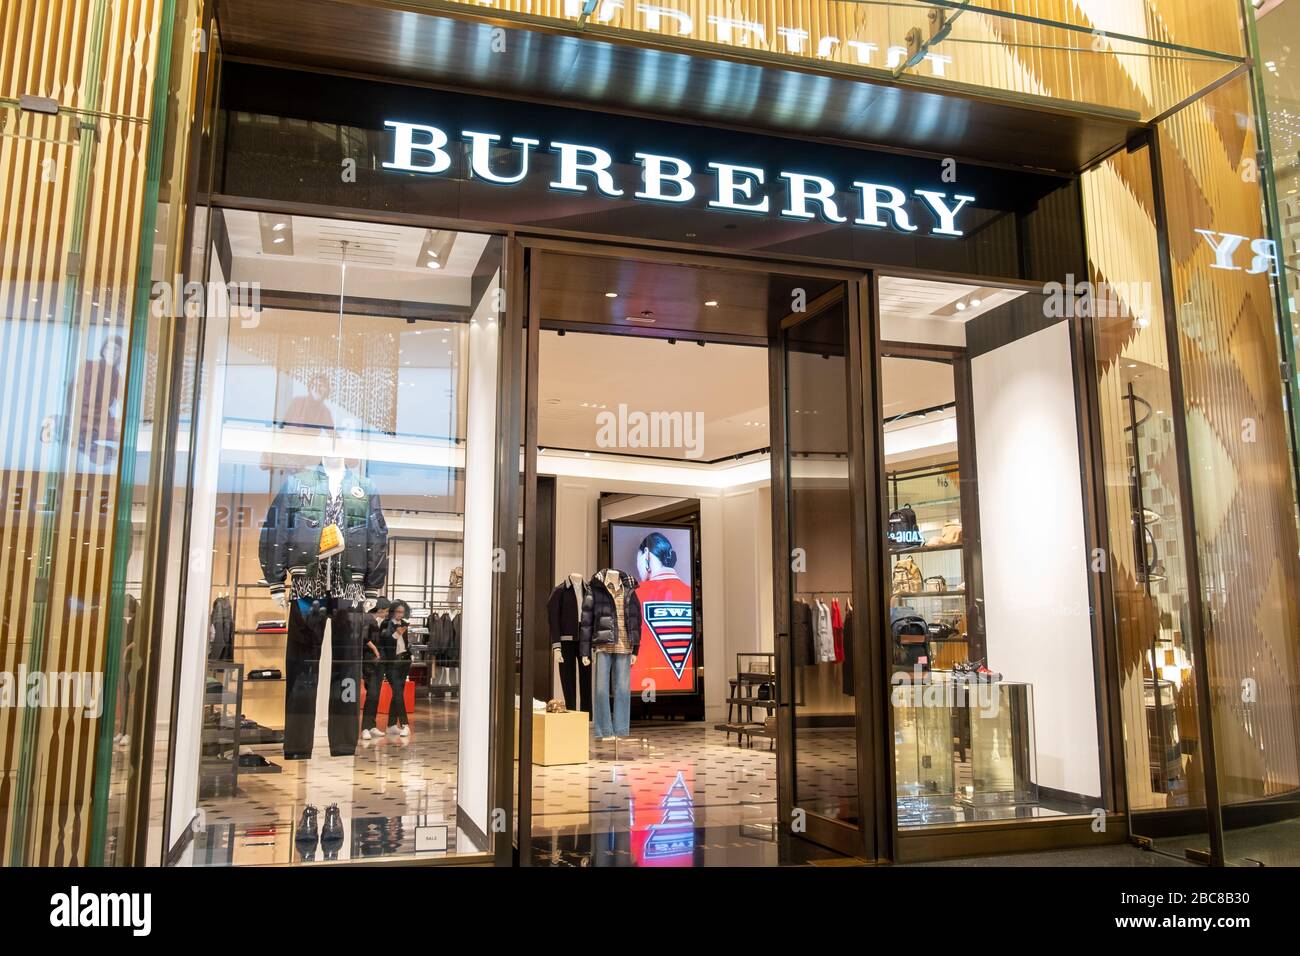 Burberry Store, una Marca minorista de lujo británica, logotipo exterior /  señalización - Londres Fotografía de stock - Alamy